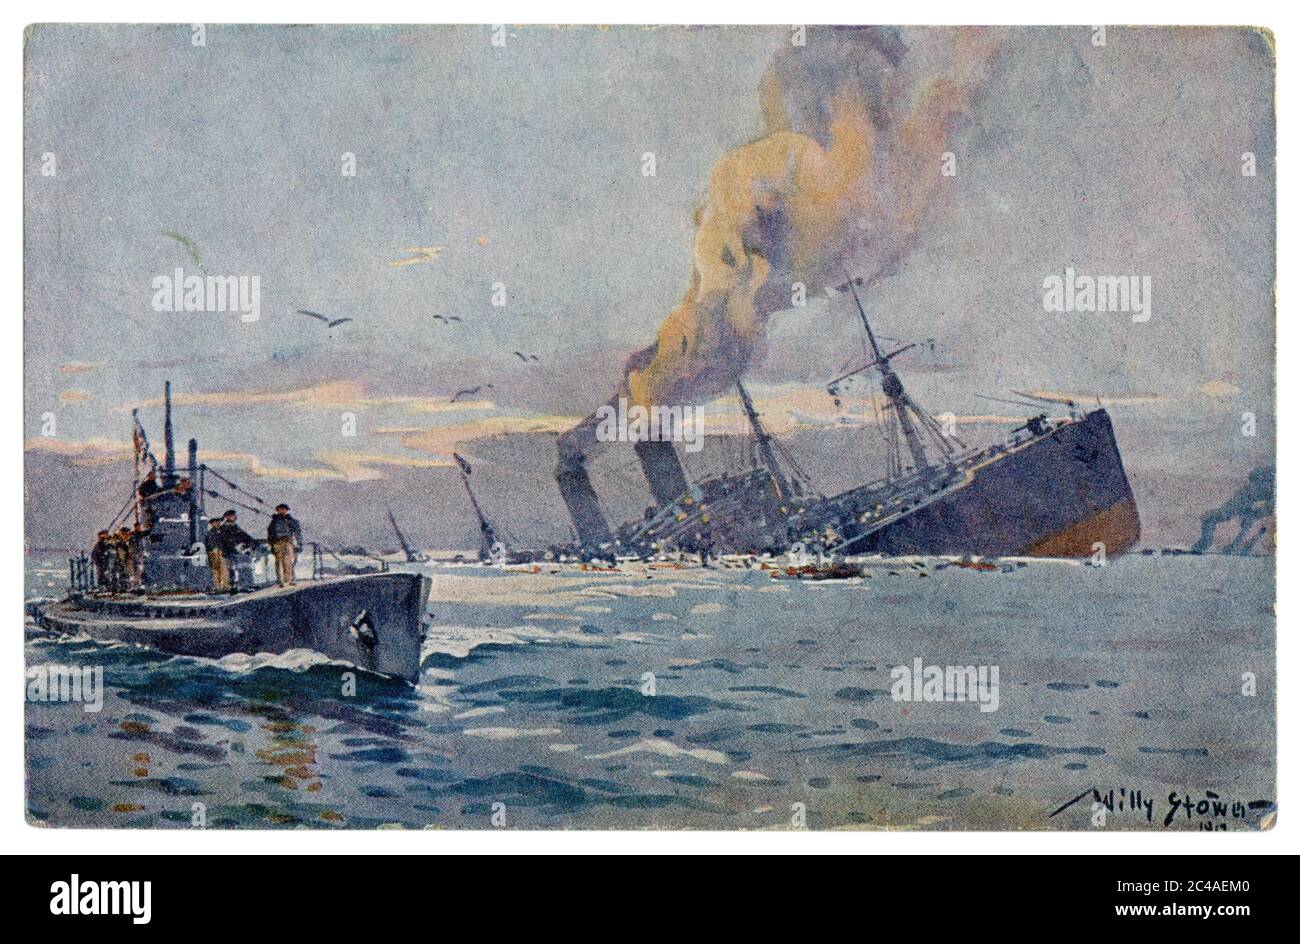 German historical postcard: Sinking of a hostile armed troop carrier by German submarine in the Mediterranean Sea, Imperial German Navy, 1917, wwi Stock Photo